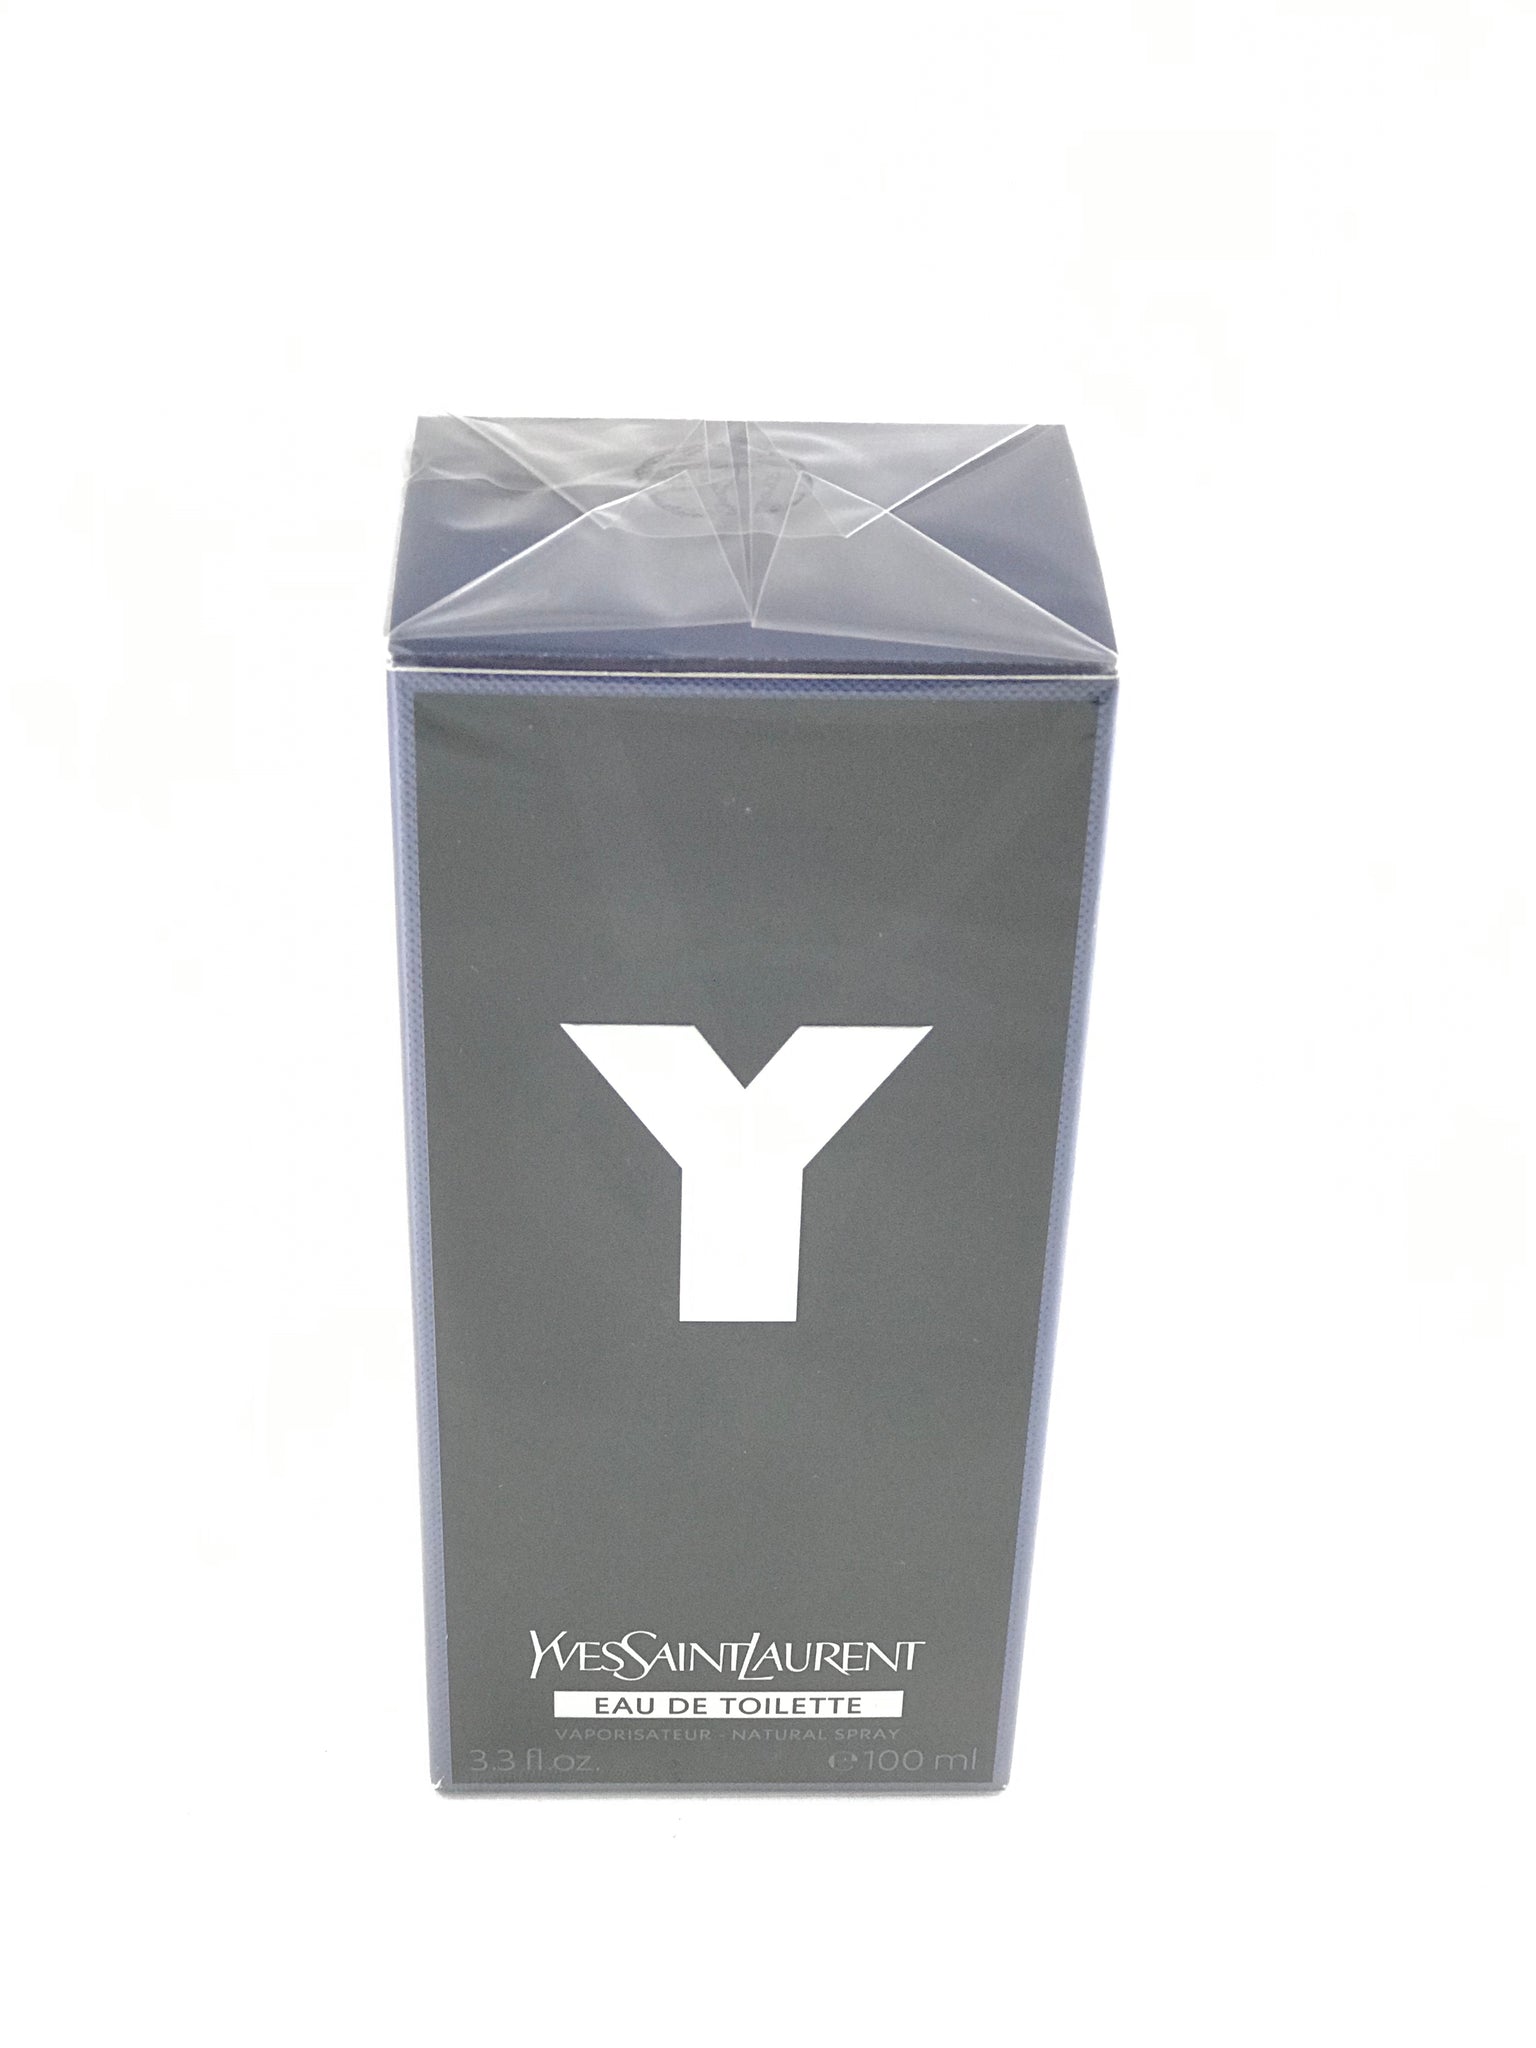 Yves Saint Laurent Y Eau De Toilette Vaporisateur Natural Spray - 3.3 oz 